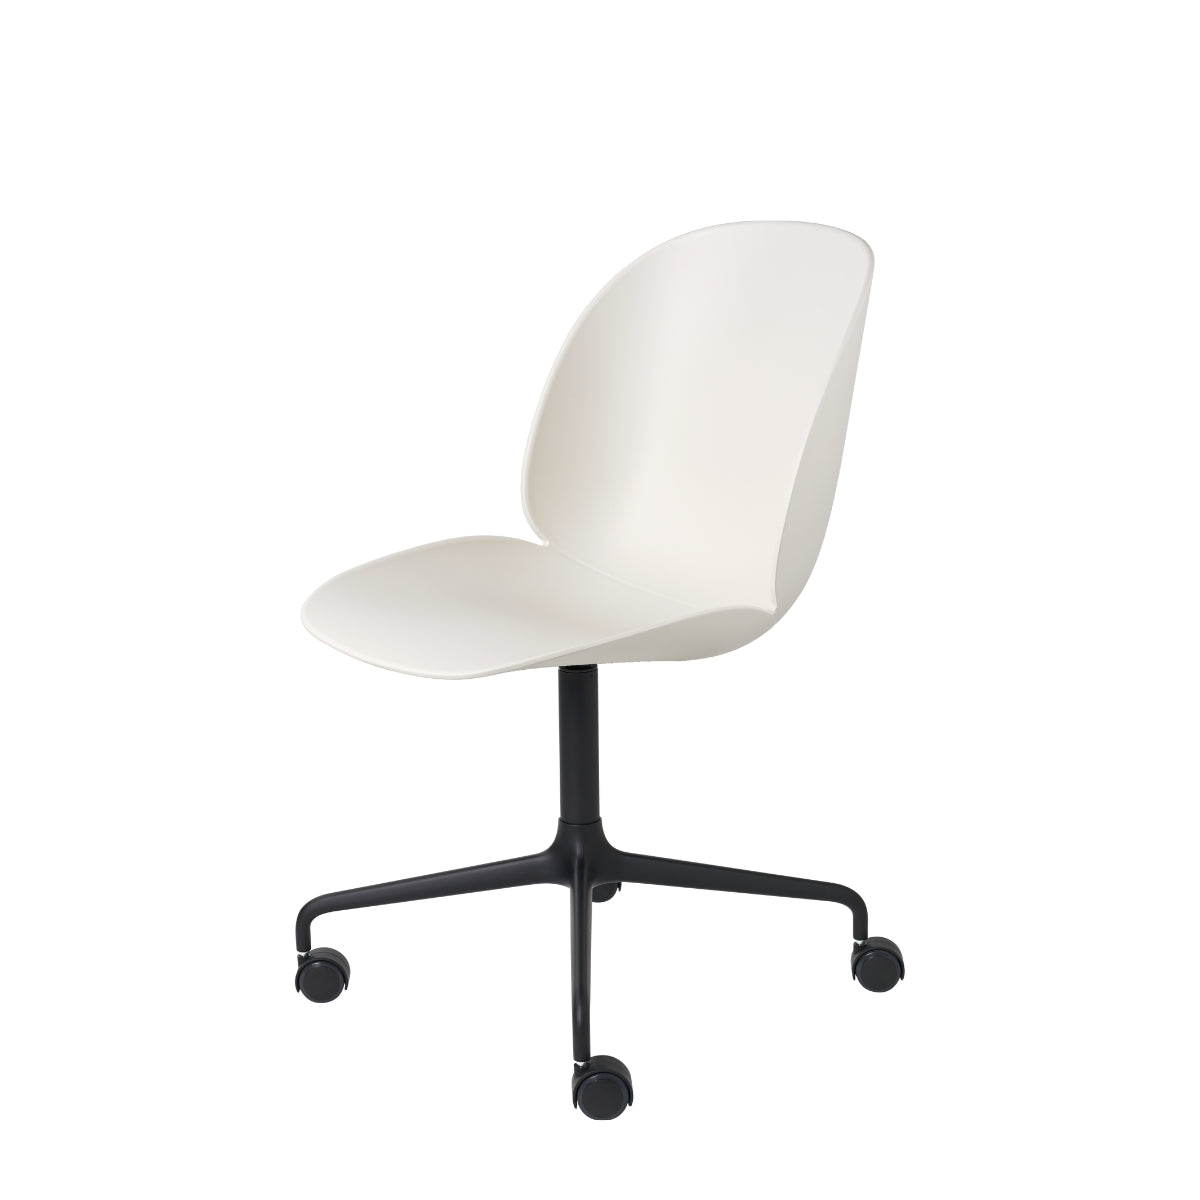 GUBI | Beetle Meeting Chair – Un-Upholstered